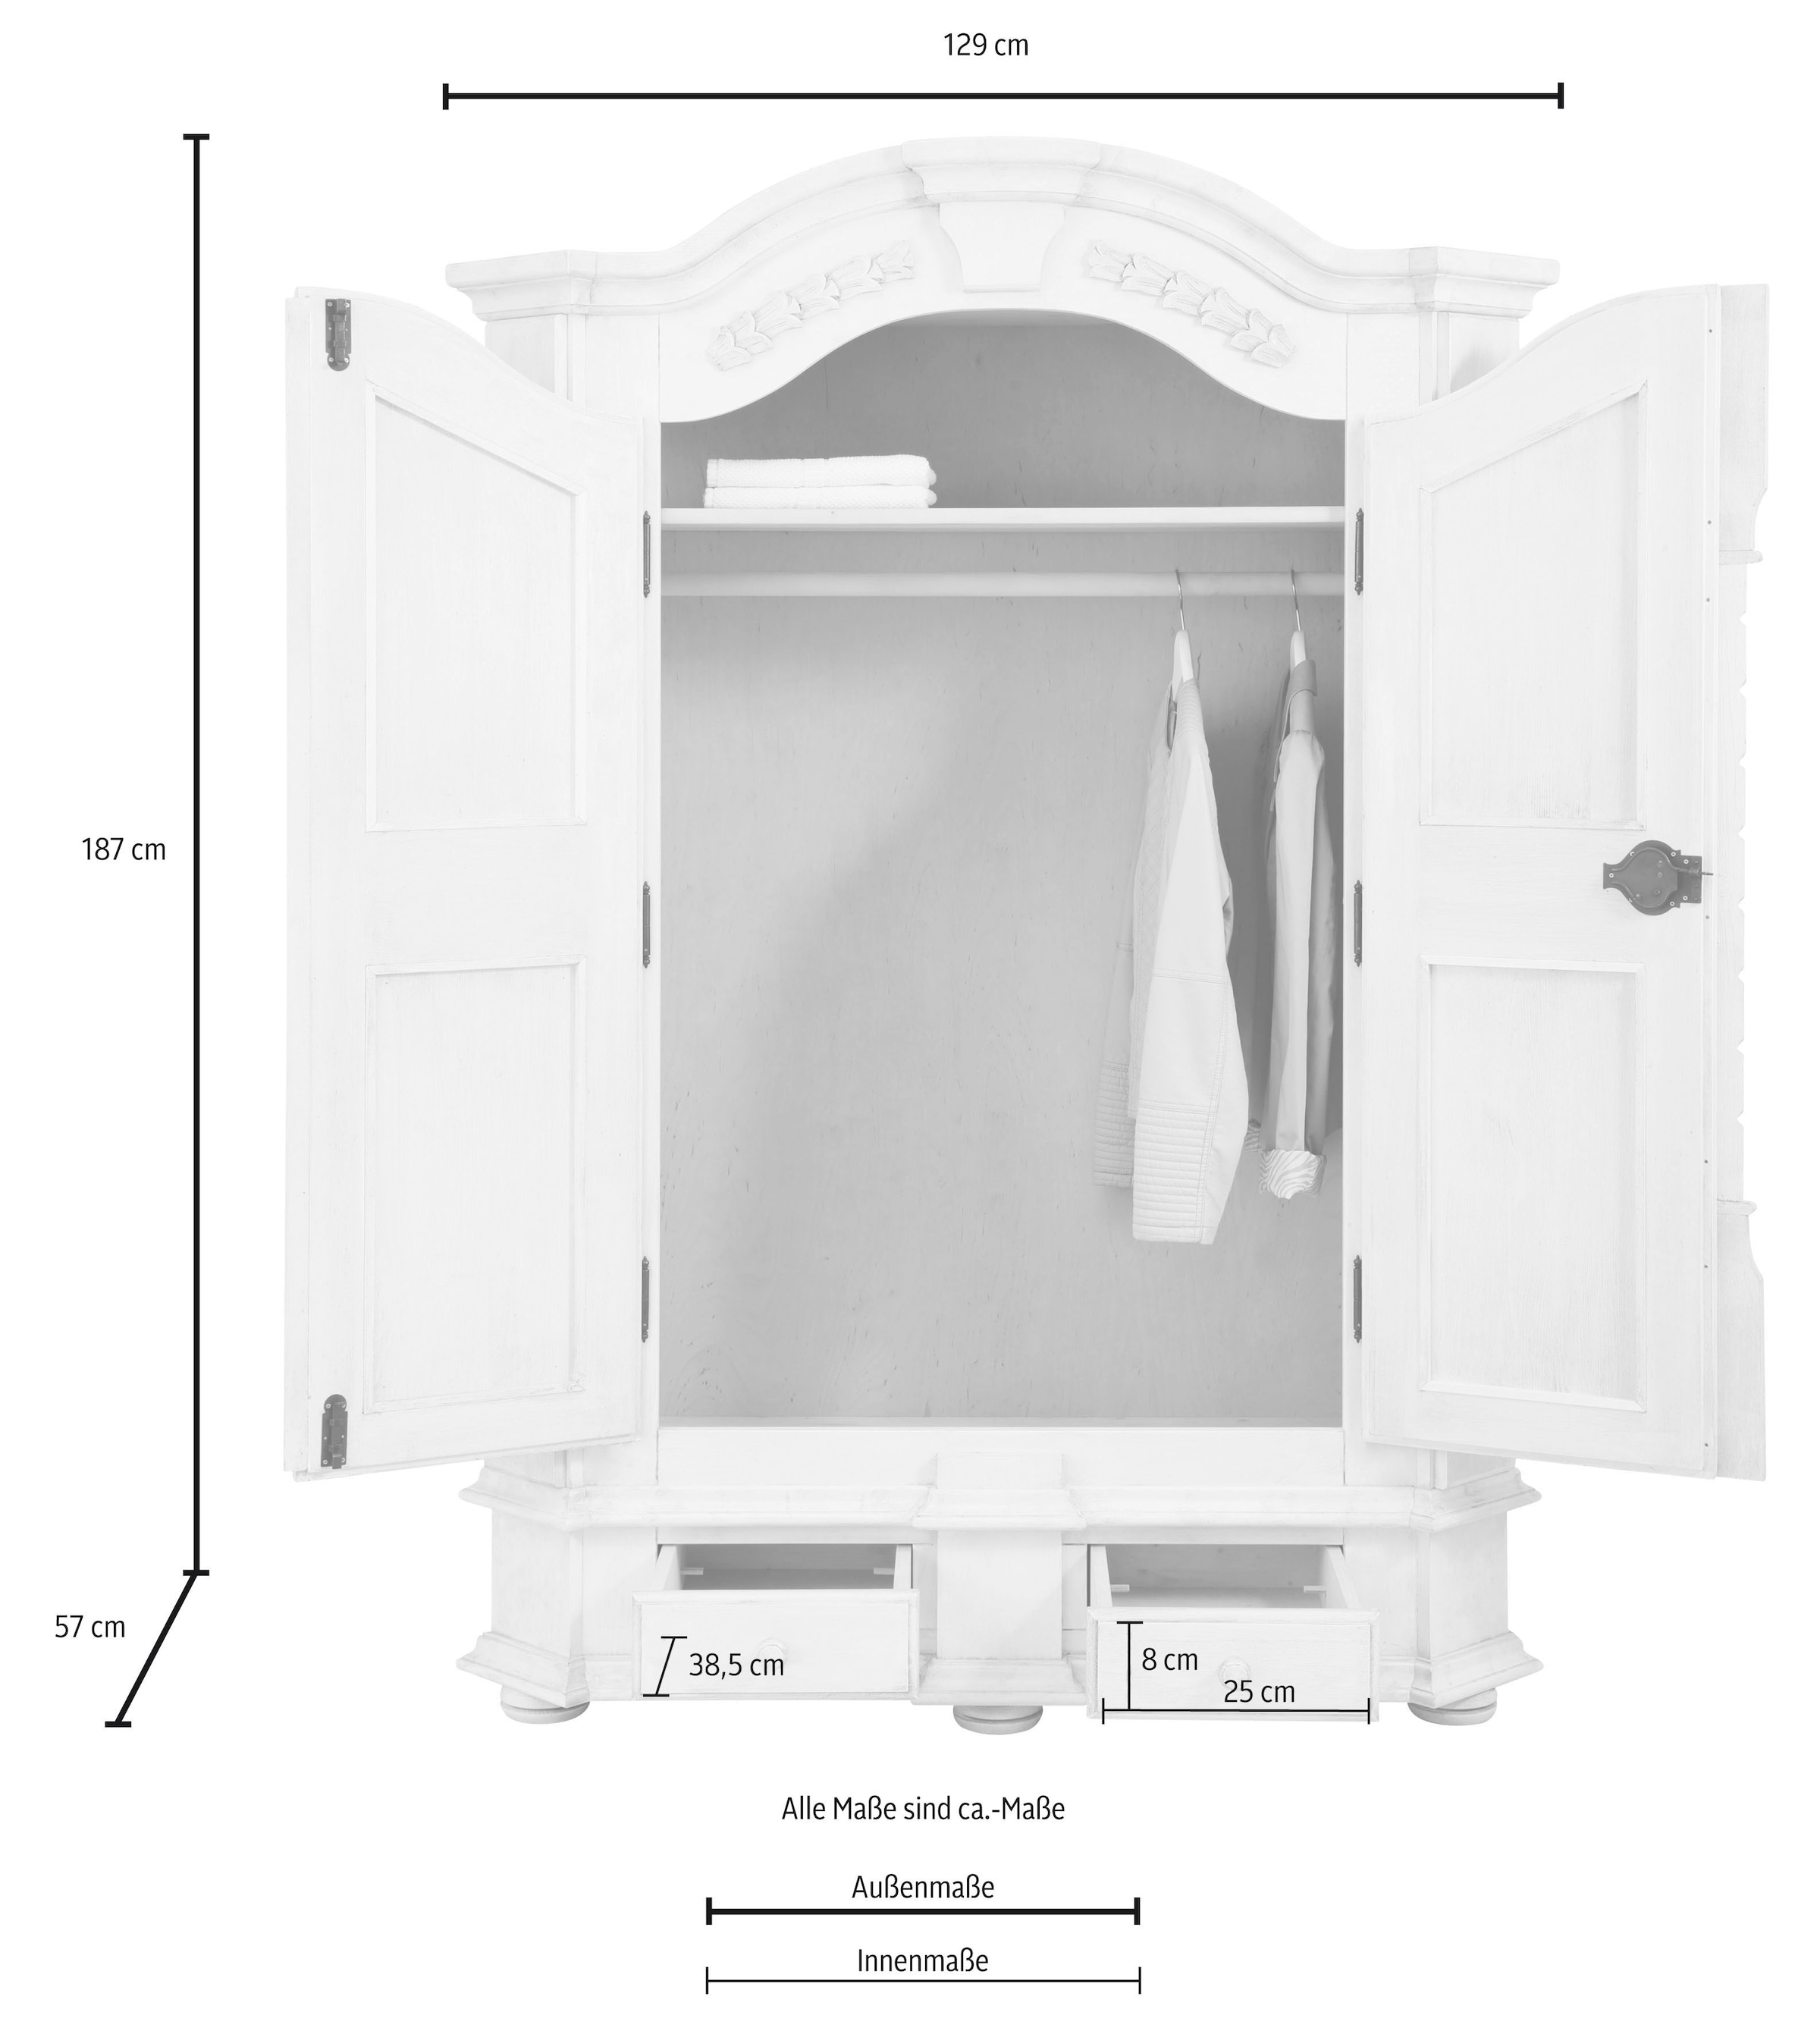 Home affaire Kleiderschrank »Sophia«, in zwei unterschiedlichen  Ausführungen der Schrankfronten, Höhe 187 cm auf Rechnung kaufen